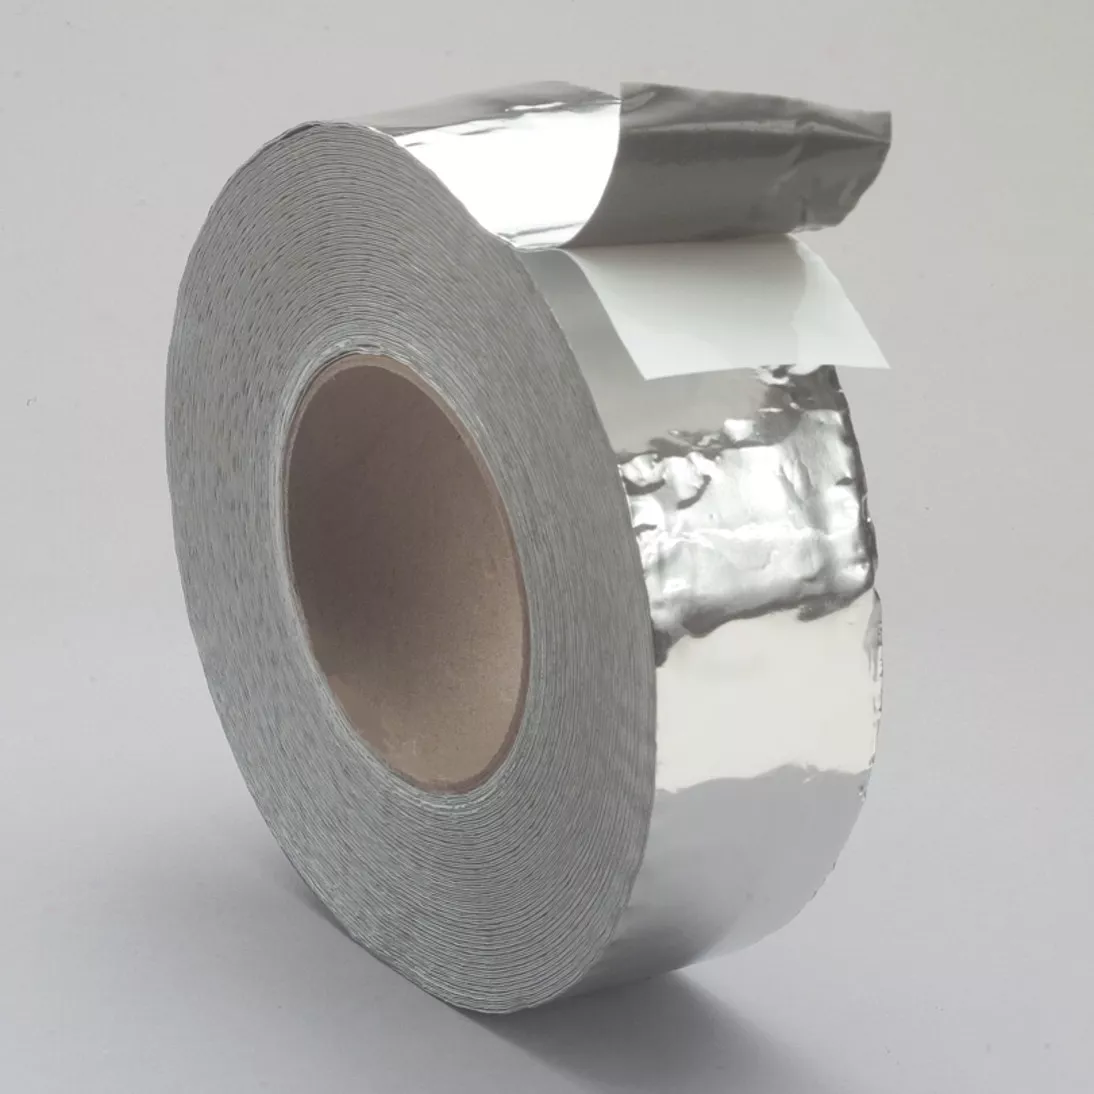 3M™ Venture Tape™ Mastik Tape 1580, Silver, 2 in x 100 ft, 24 rolls per
case